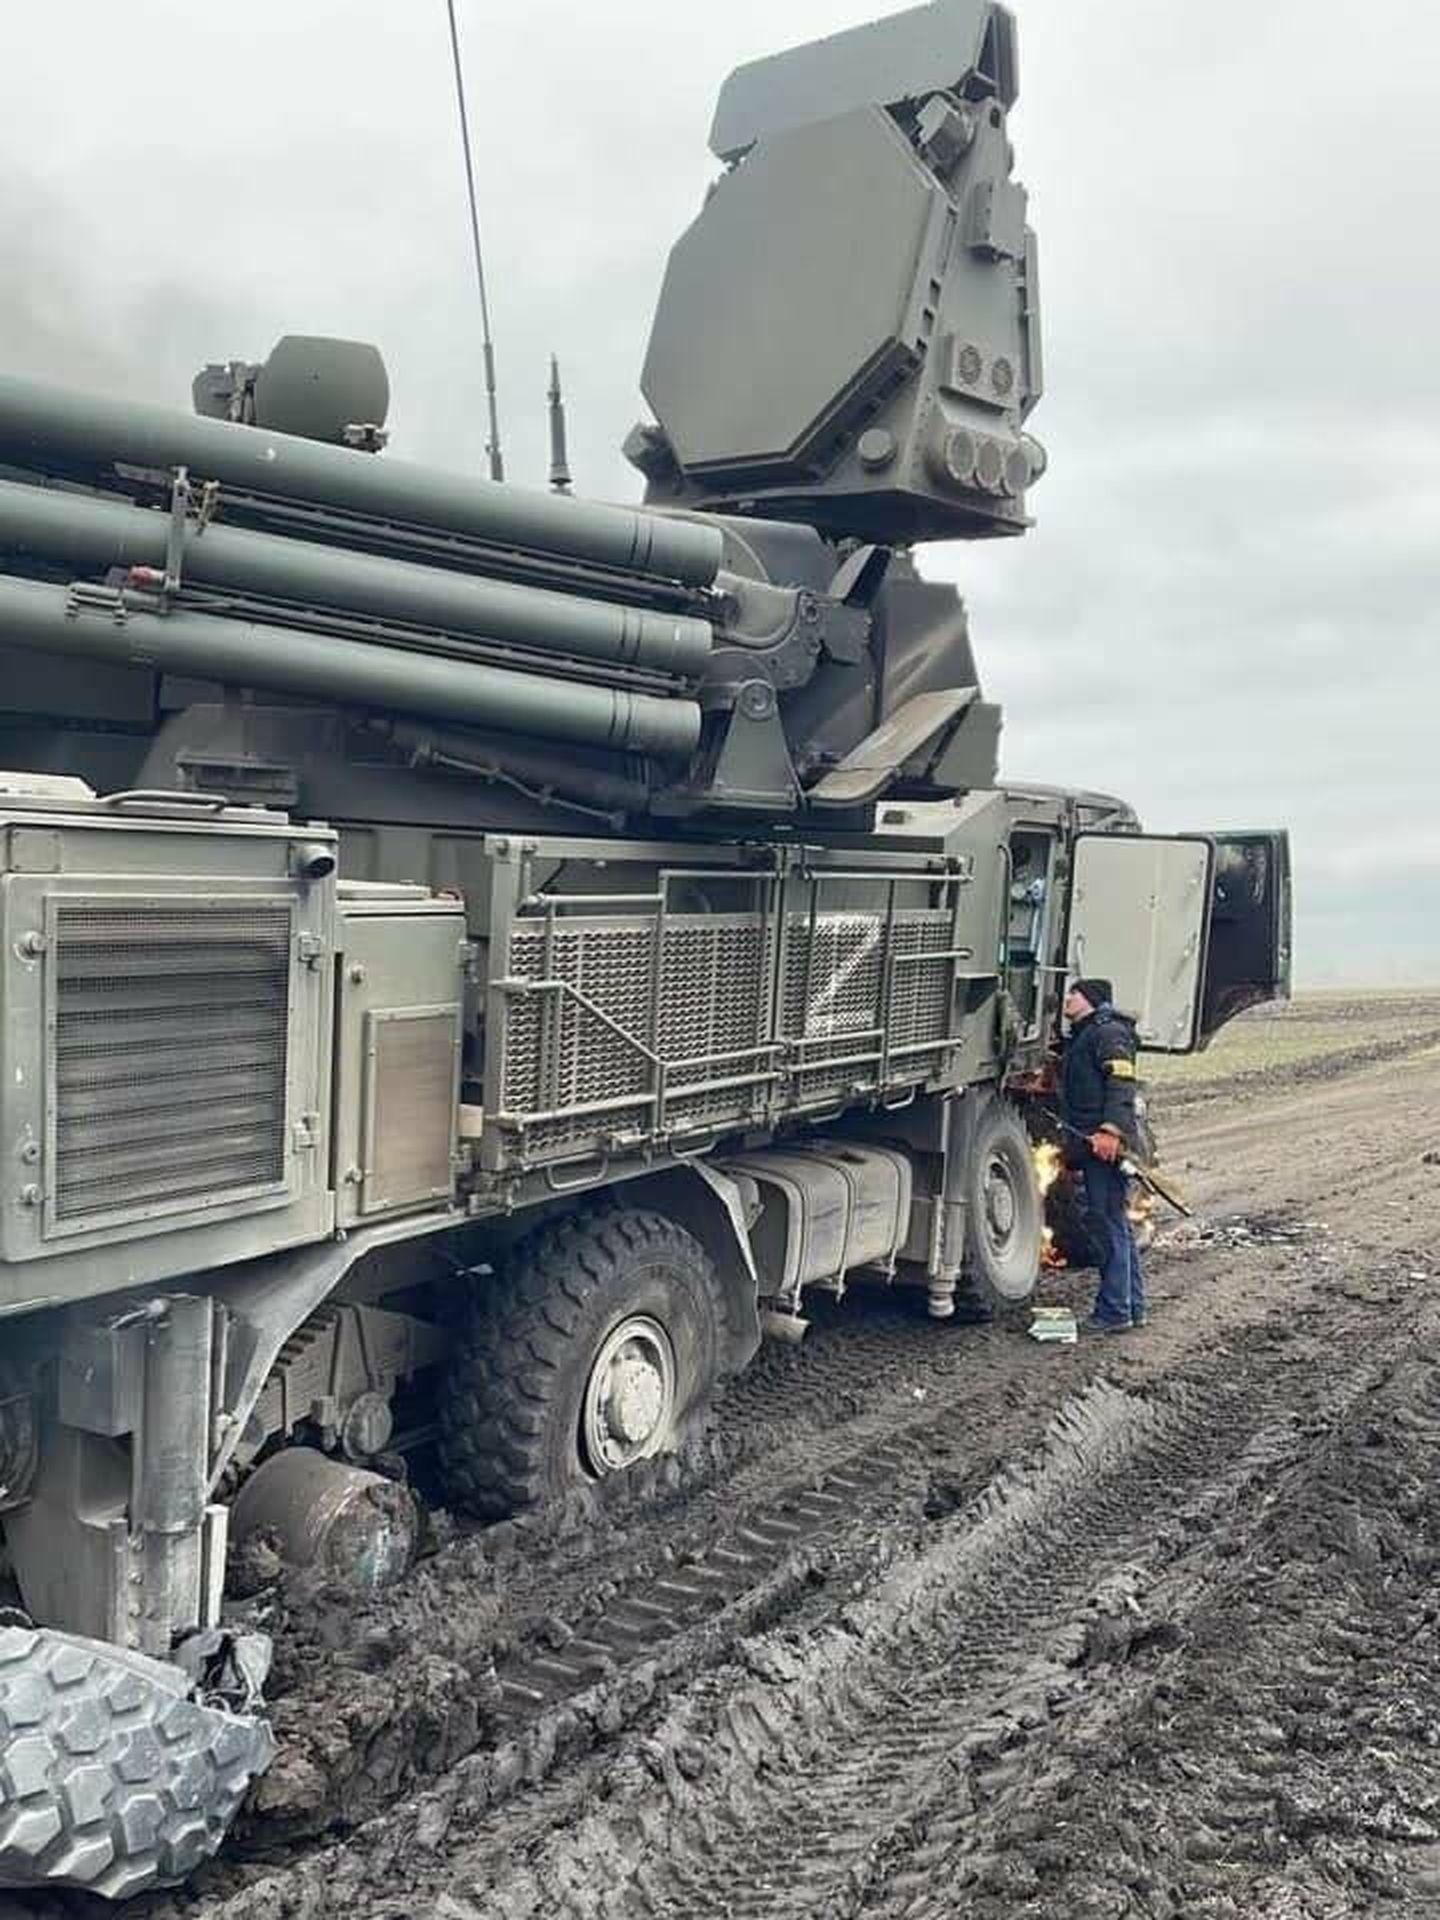 Unidades militares rusas varadas en el barro gracias a sus neumáticos de mala calidad.